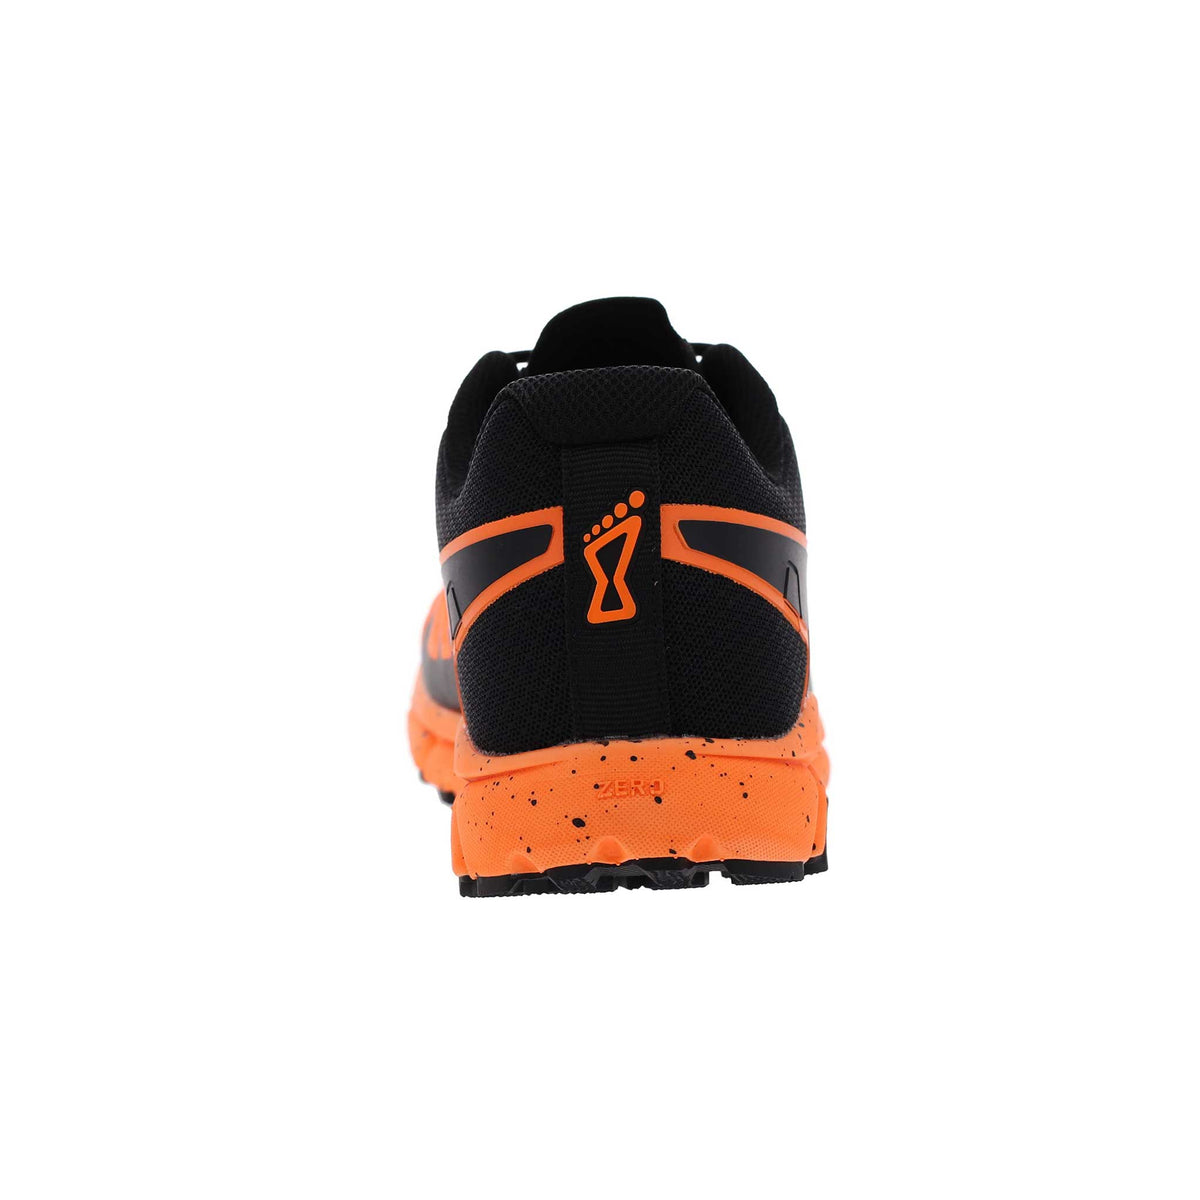 Inov-8 Terraultra G 270 chaussures de course à pied trail pour homme orange/noir talon